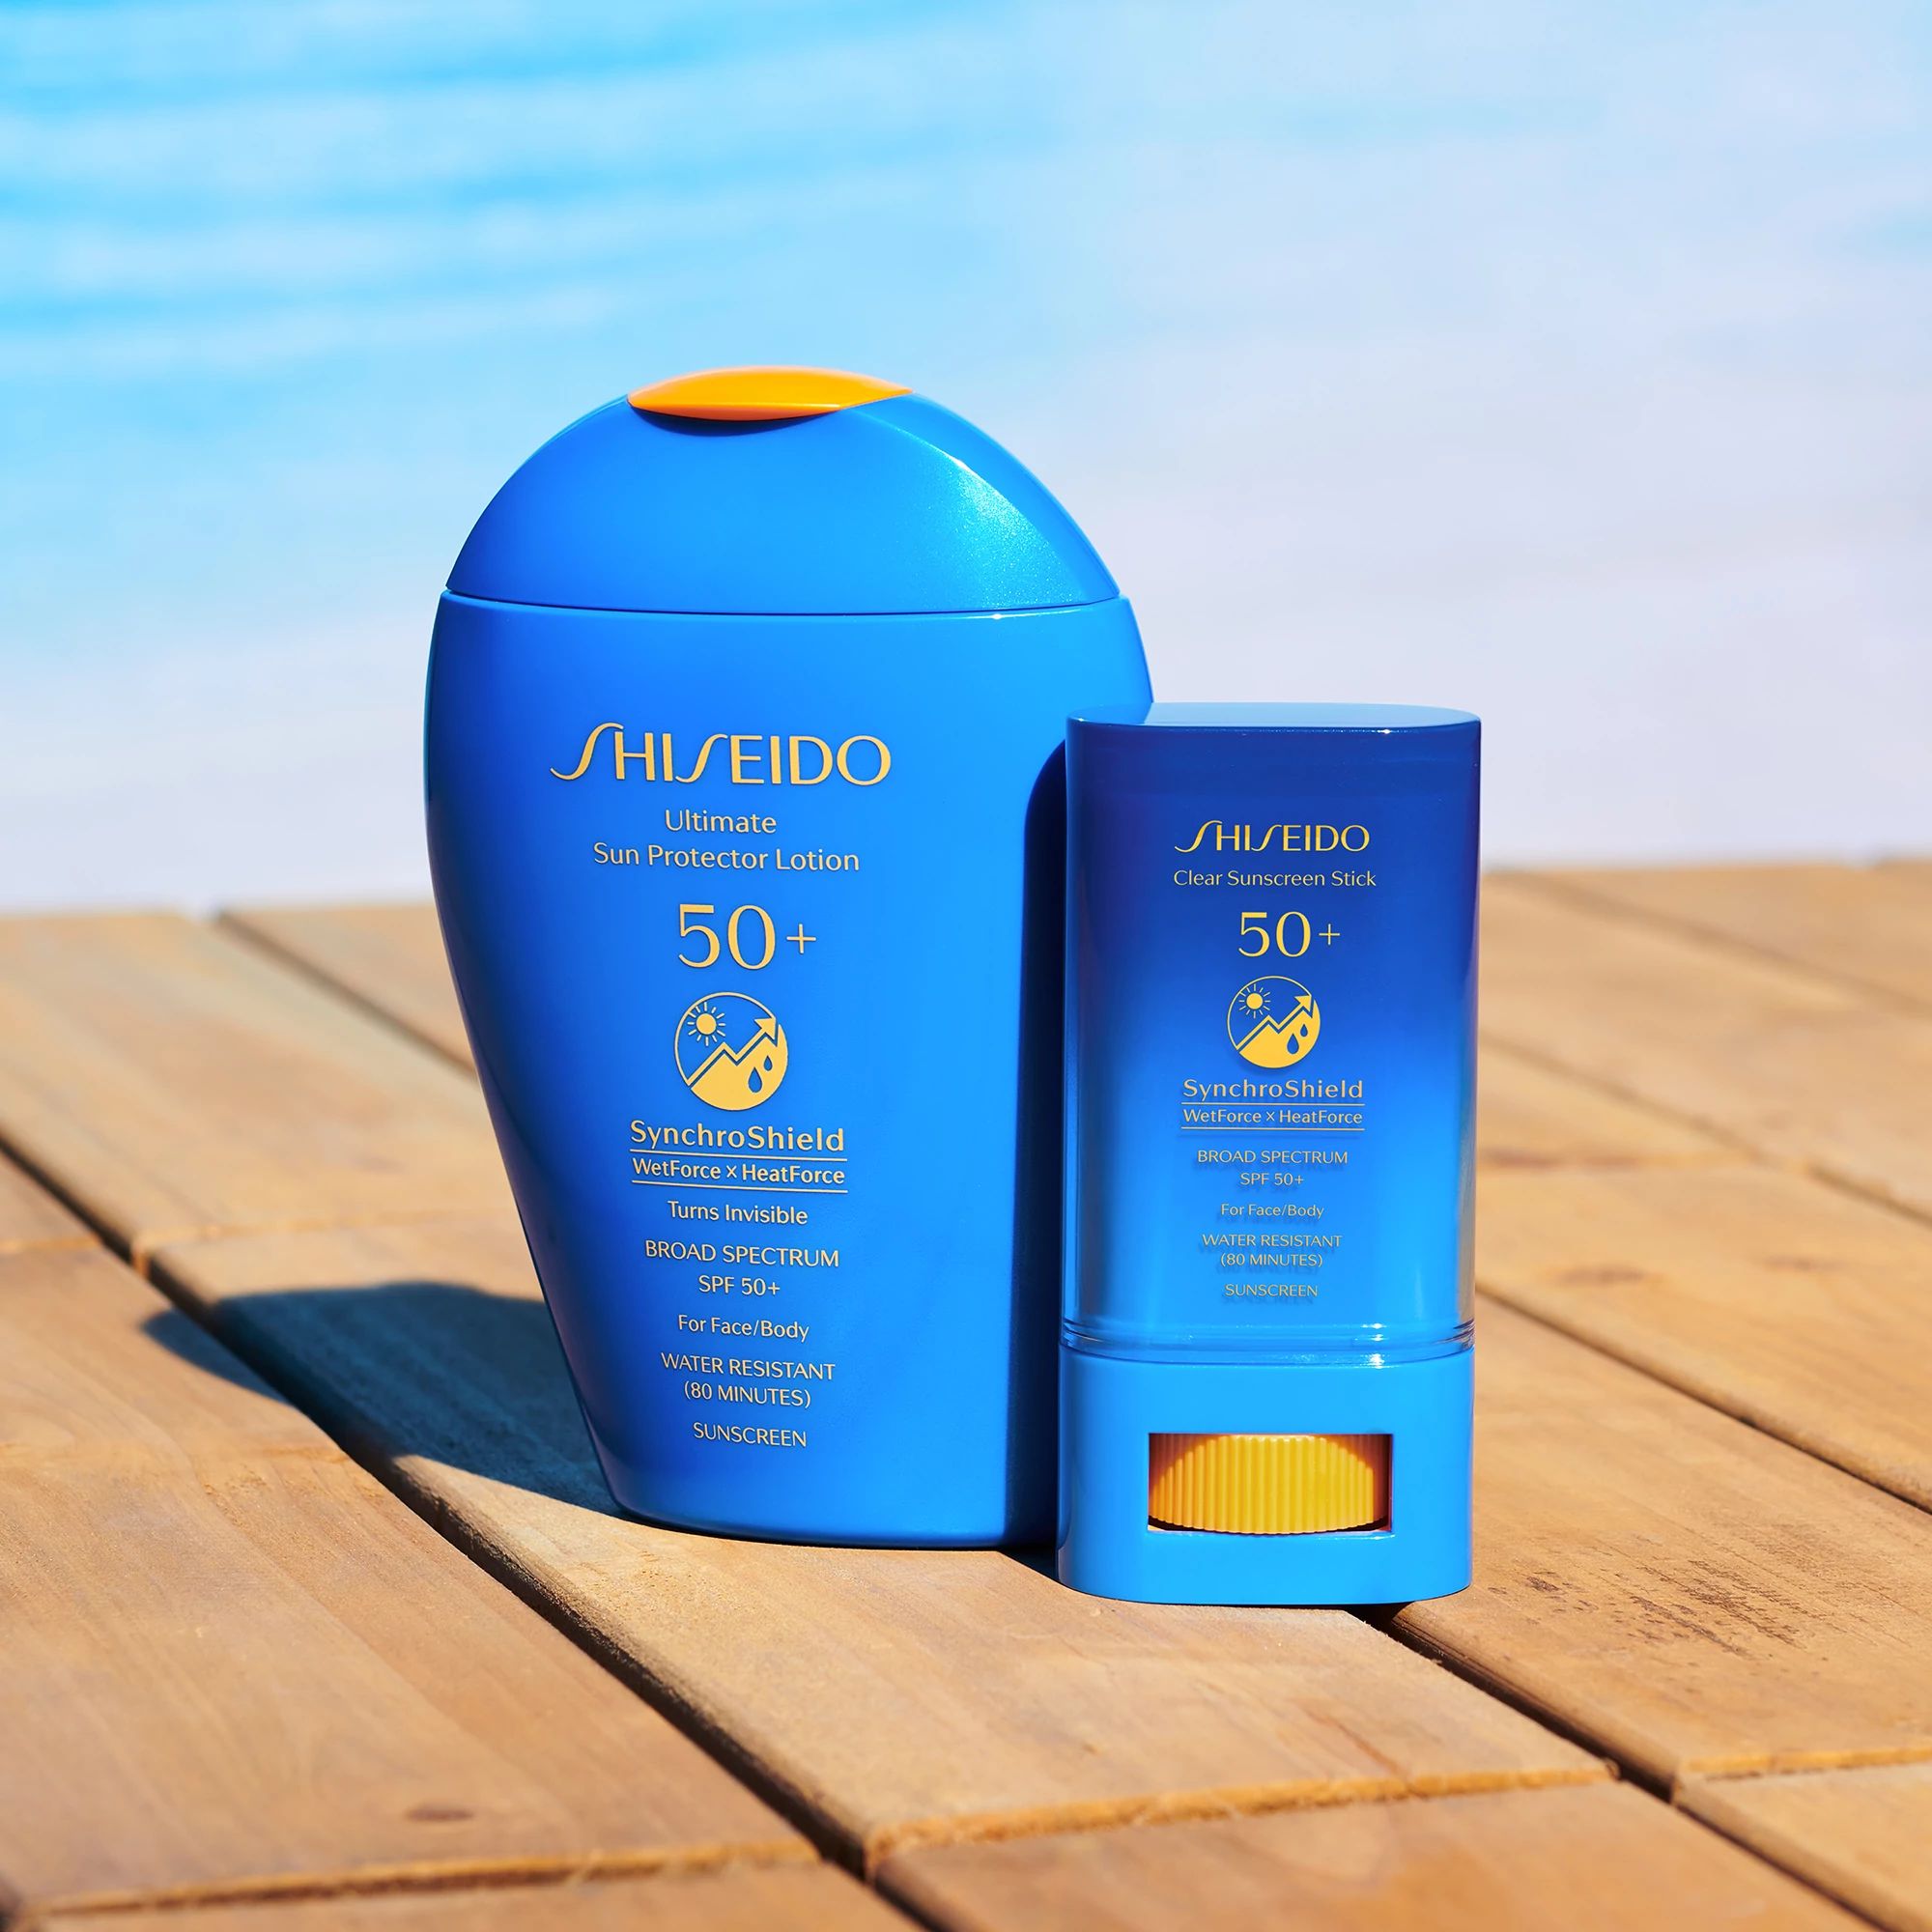 Clear Sunscreen Stick SPF50+ - Shiseido